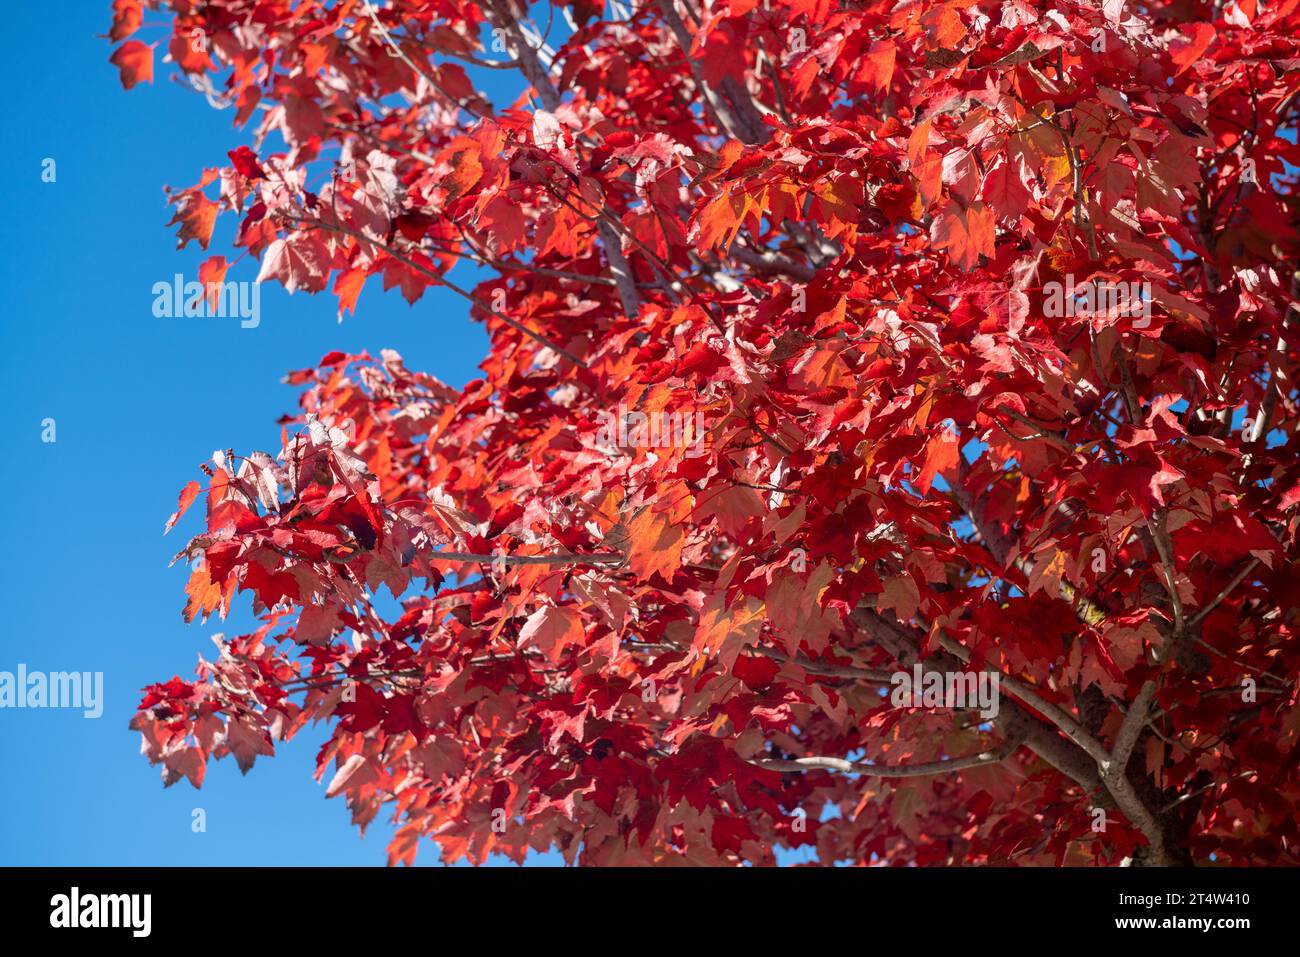 Rote Blätter, Herbstsaison, die Blätter der Bäume werden gelb oder rot und geben warme und herbstliche Farben, die alles schön machen mit vielen warmen Re Stockfoto